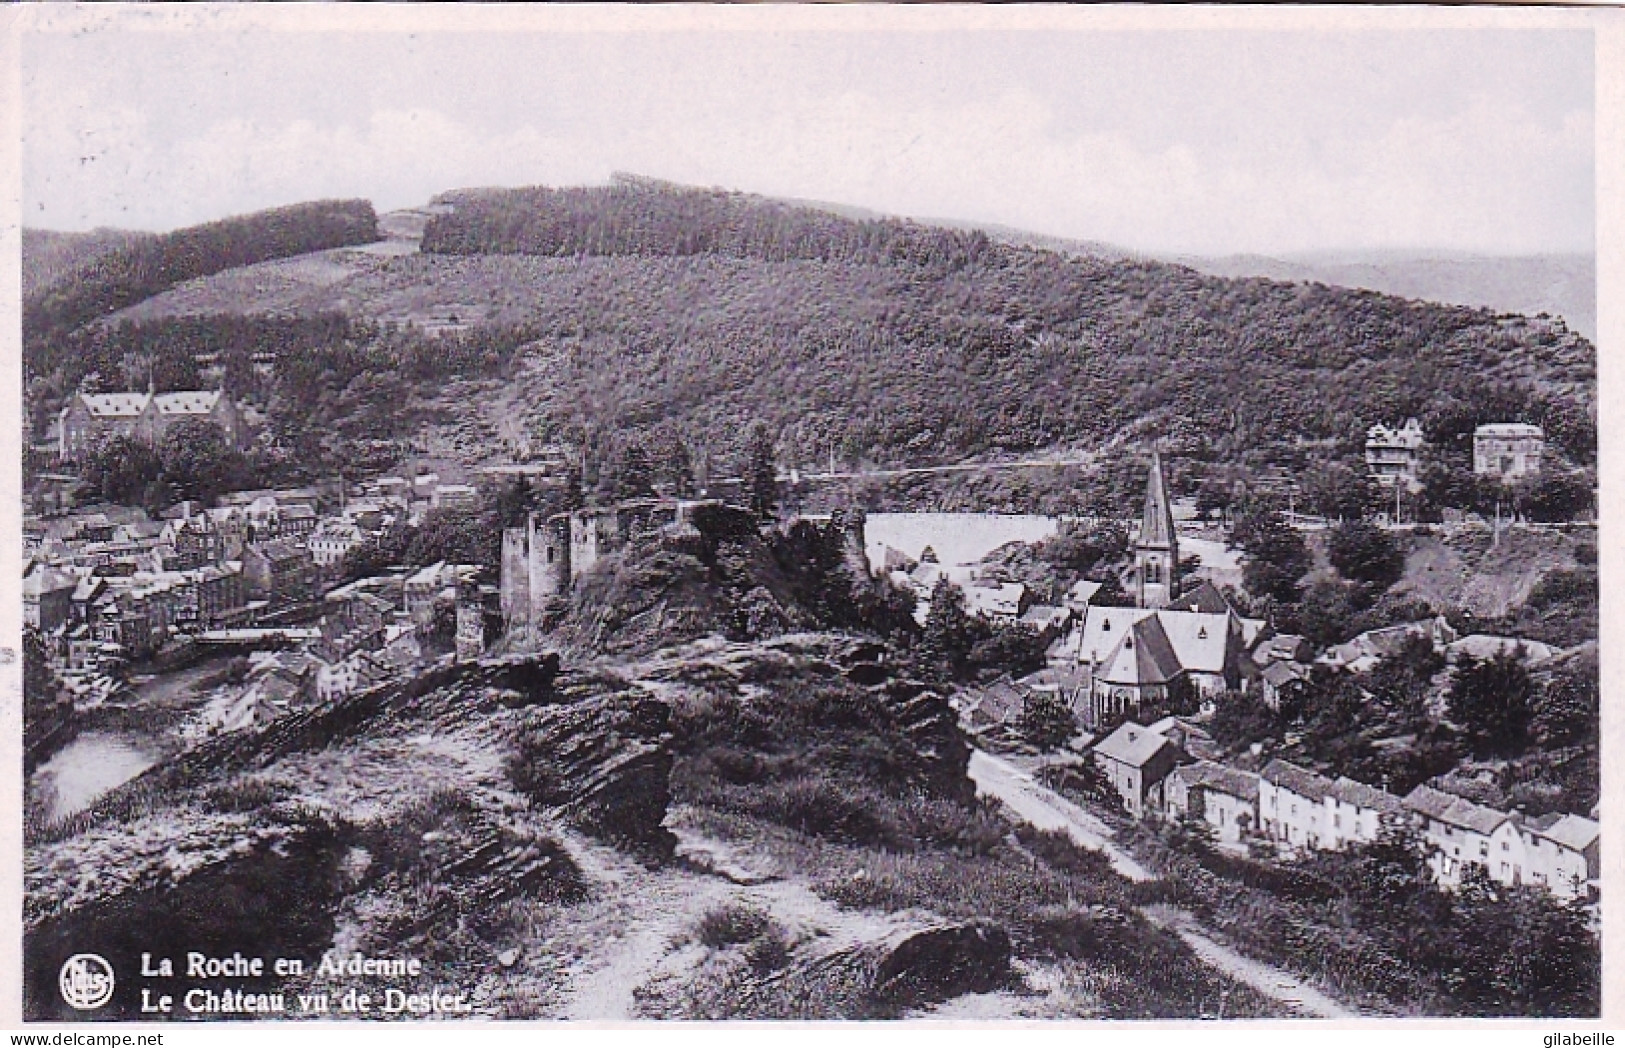  LA ROCHE En ARDENNE - Le Chateau Vu De Dester - La-Roche-en-Ardenne